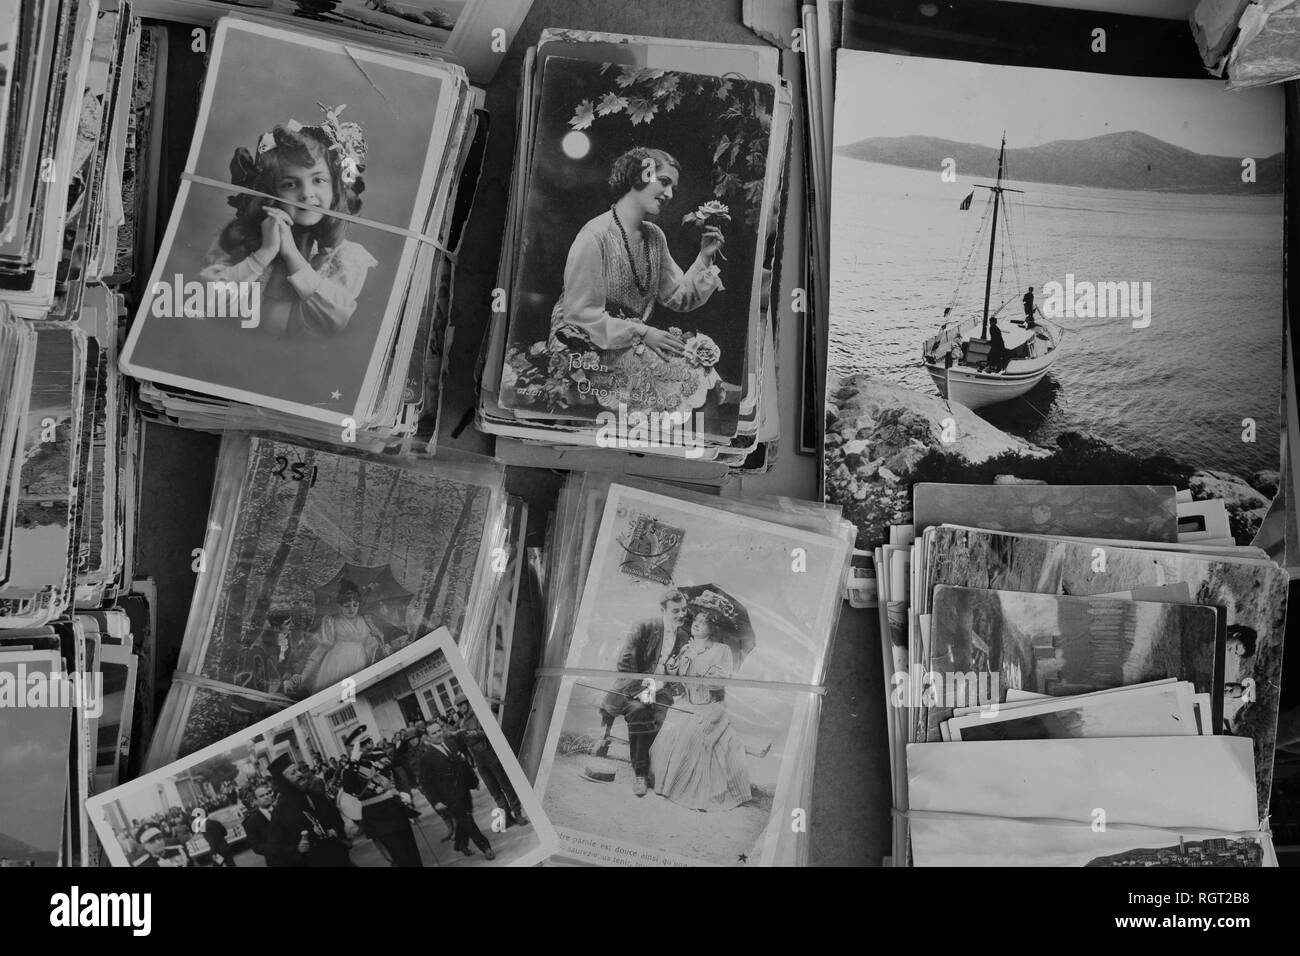 Athènes, Grèce - 14 septembre 2018 : Collection de cartes postales anciennes et des photographies d'antiquités brocante au magasin. Noir et blanc. Banque D'Images